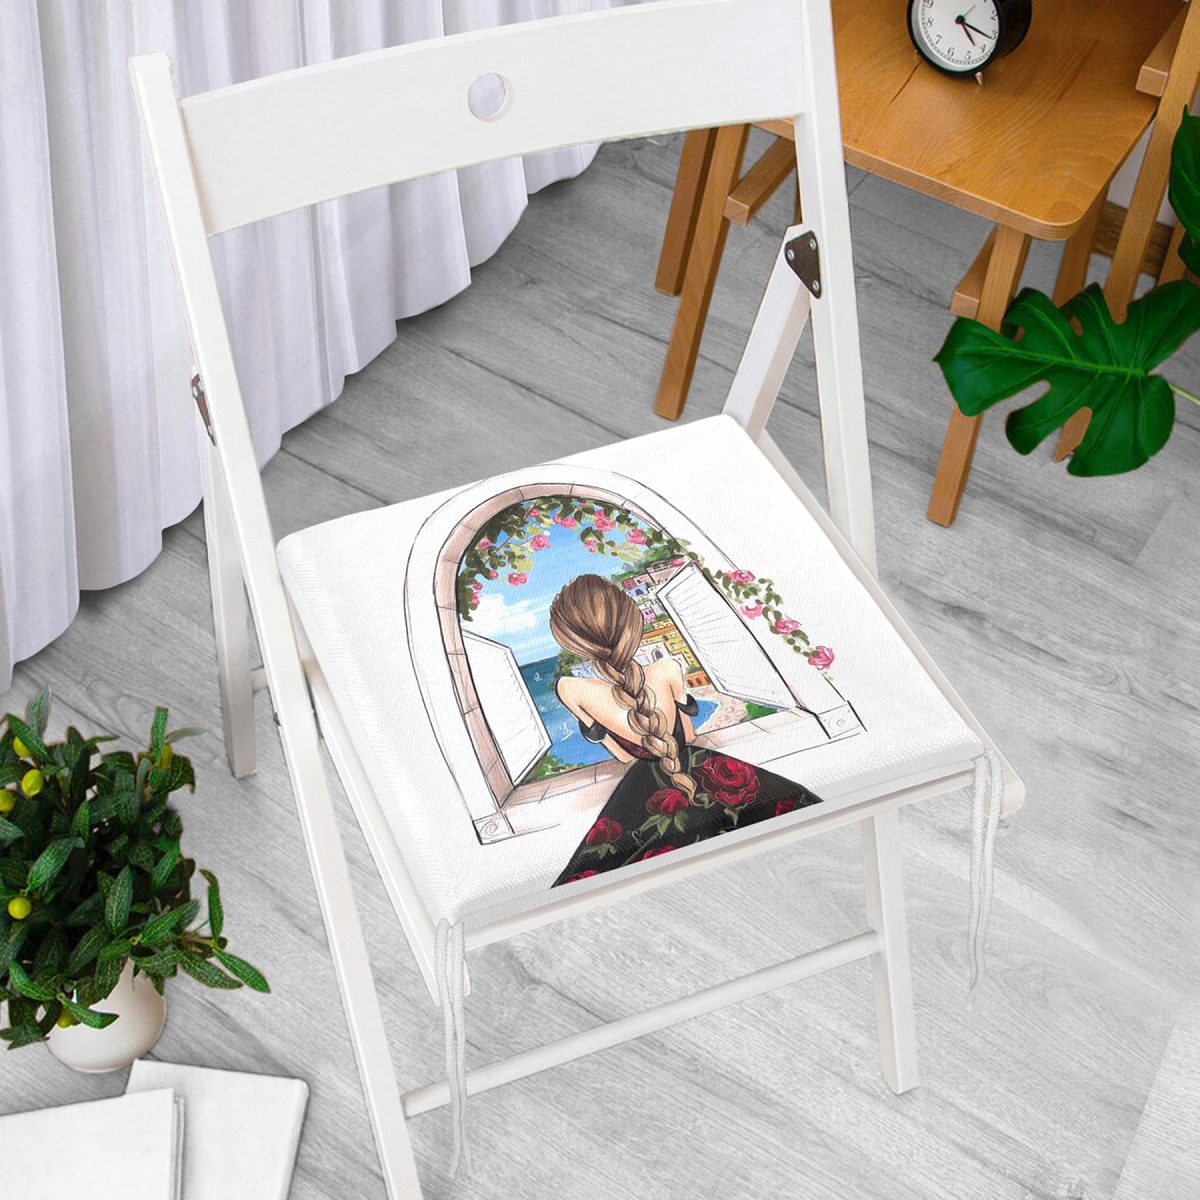 Mutluluk Manzarası Suluboya Çizimli Özel Tasarım Dekoratif Fermuarlı Sandalye Minderi Realhomes